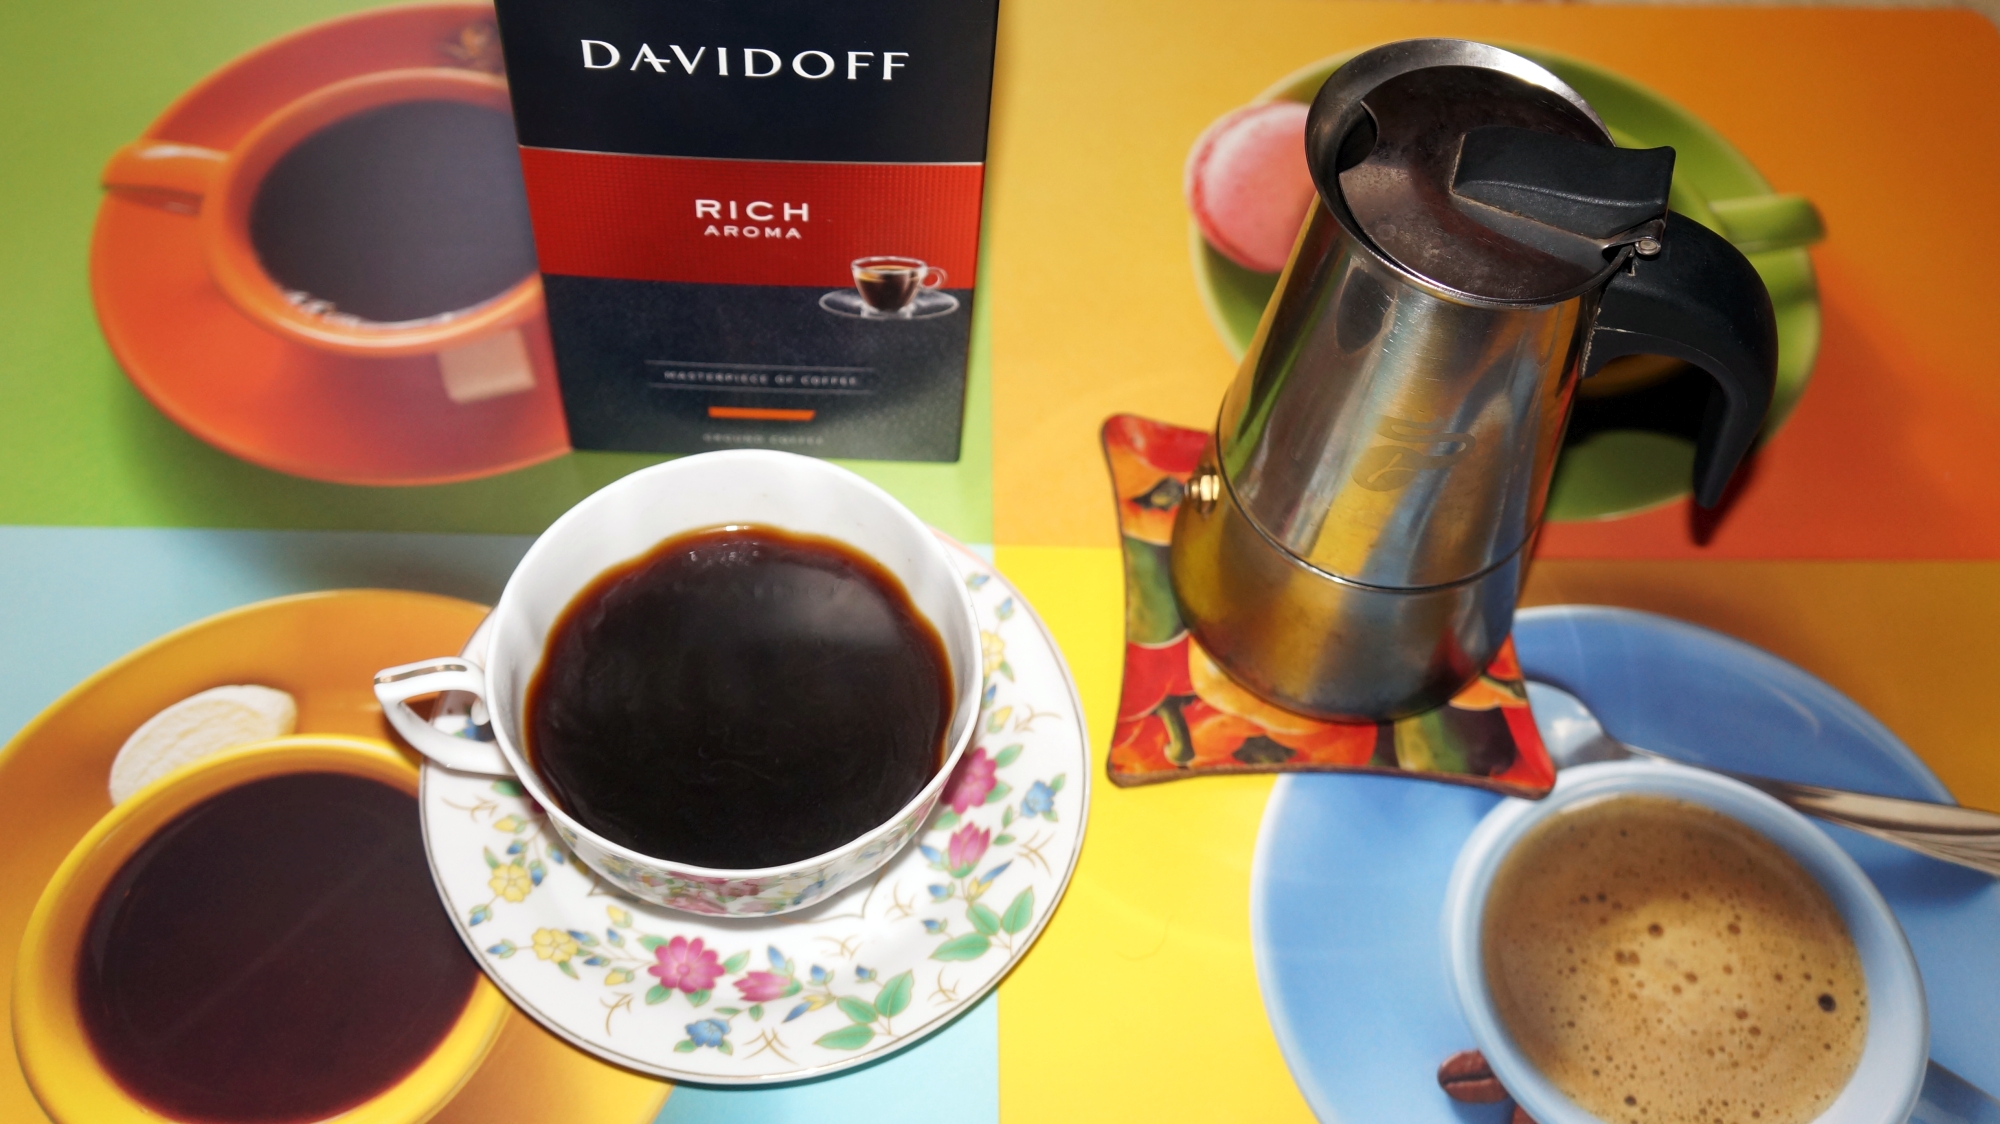 Кофе молотый Davidoff Rich Aroma